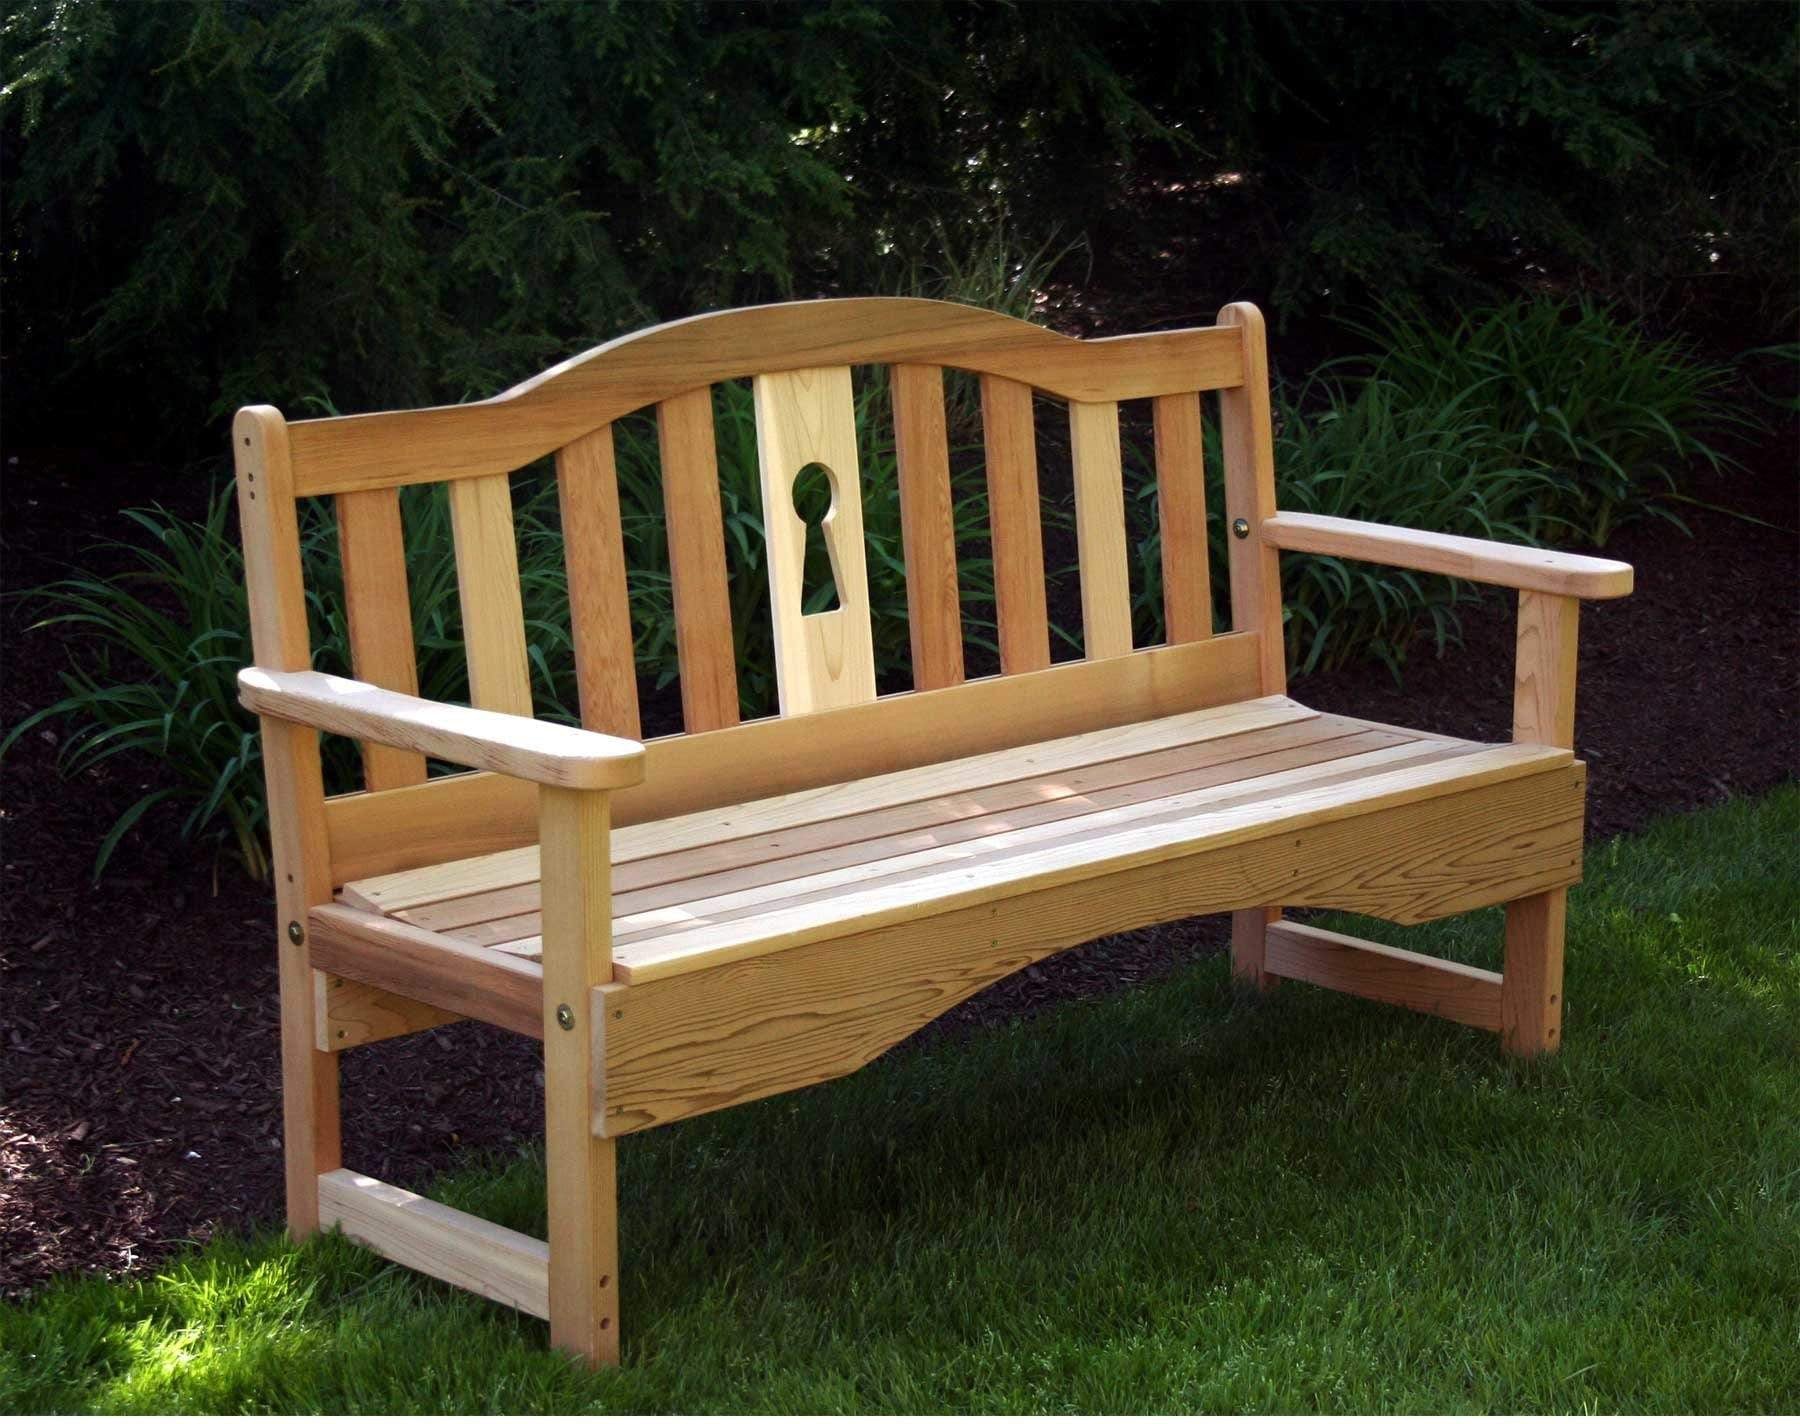 Creekvine Designs 2' Cedar Keyway Garden Bench-Rustic Furniture Marketplace